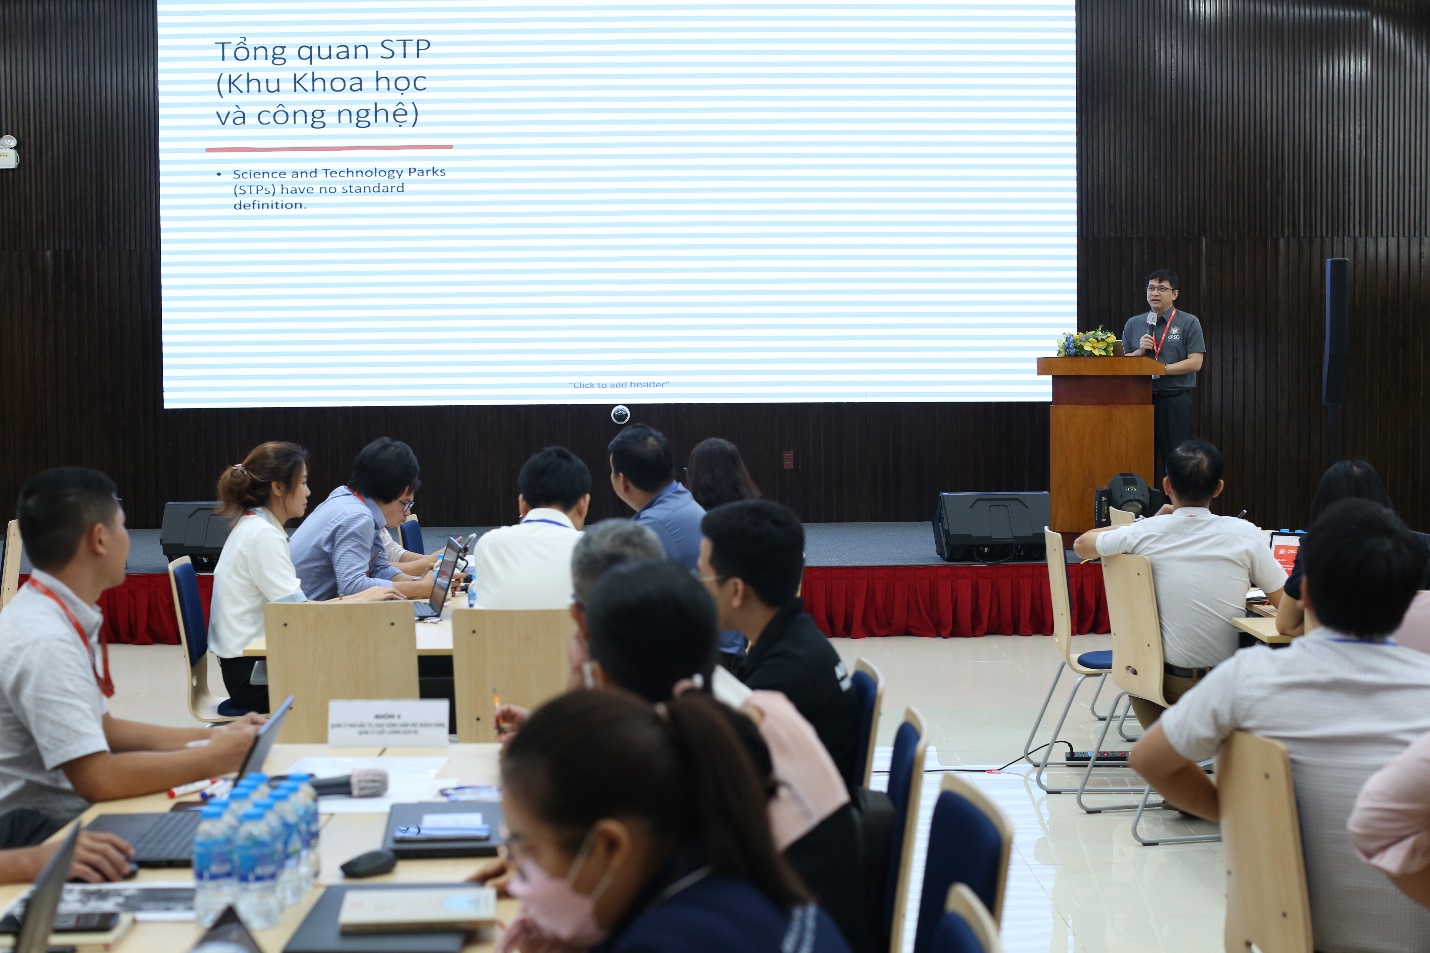 Ông Lâm Nguyễn Hải Long, Giám đốc QTSC chia sẻ về “Mô hình và định hướng phát triển các Khu Công nghệ trên Thế giới” trong chuyên đề đầu tiên của chương trình tập huấn